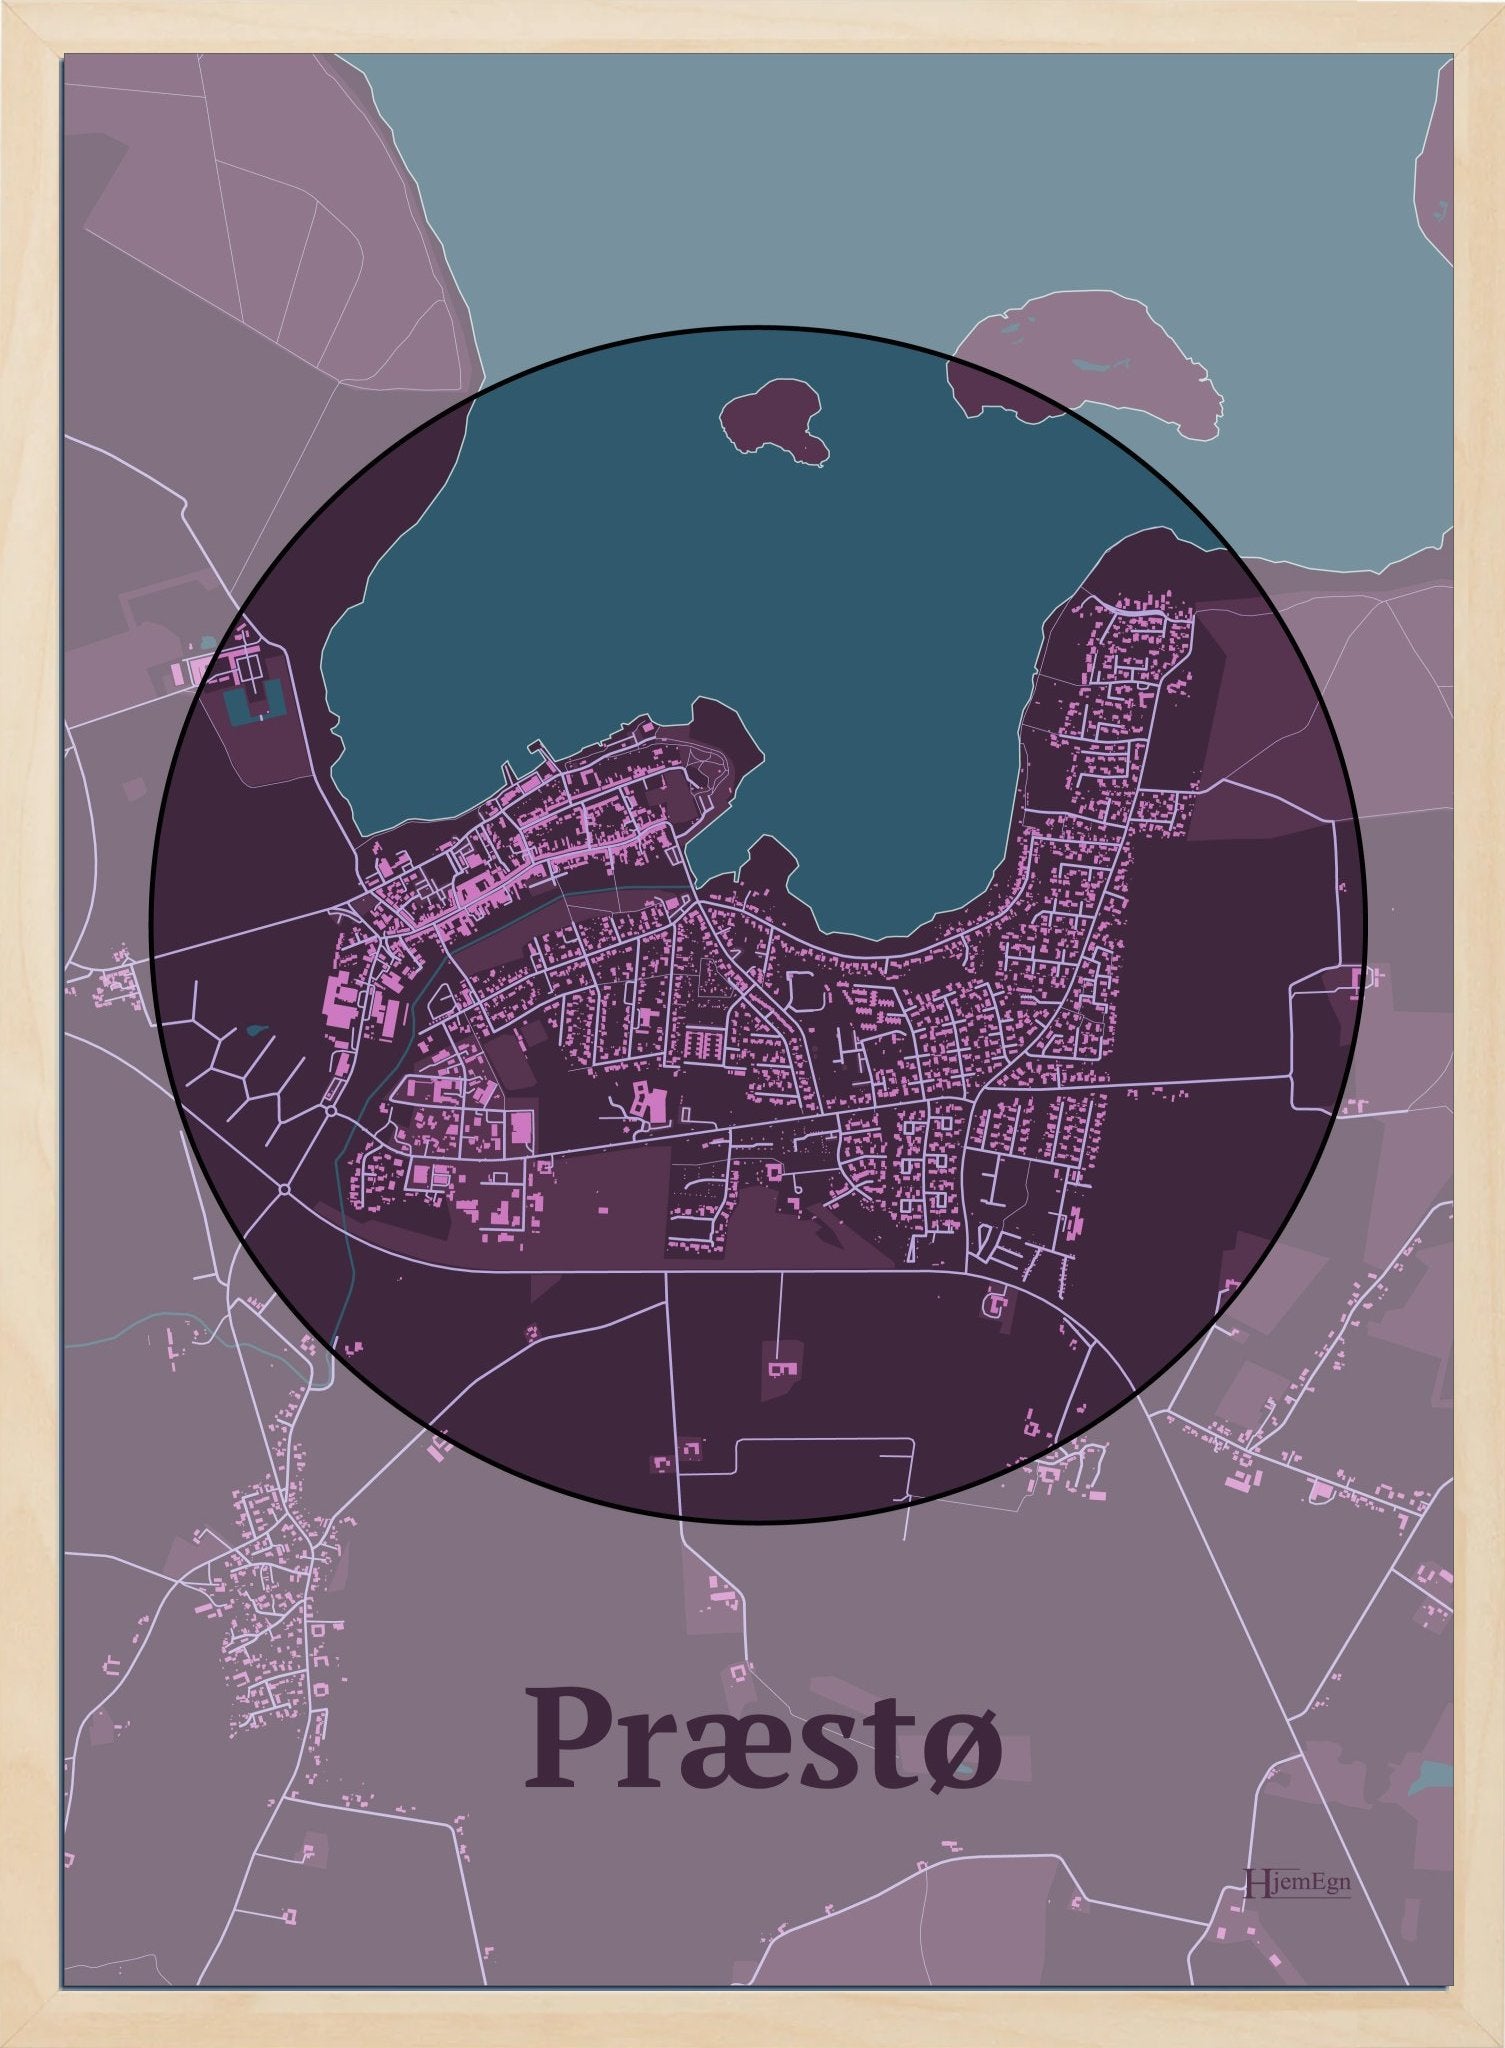 Præstø plakat i farve mørk rød og HjemEgn.dk design centrum. Design bykort for Præstø